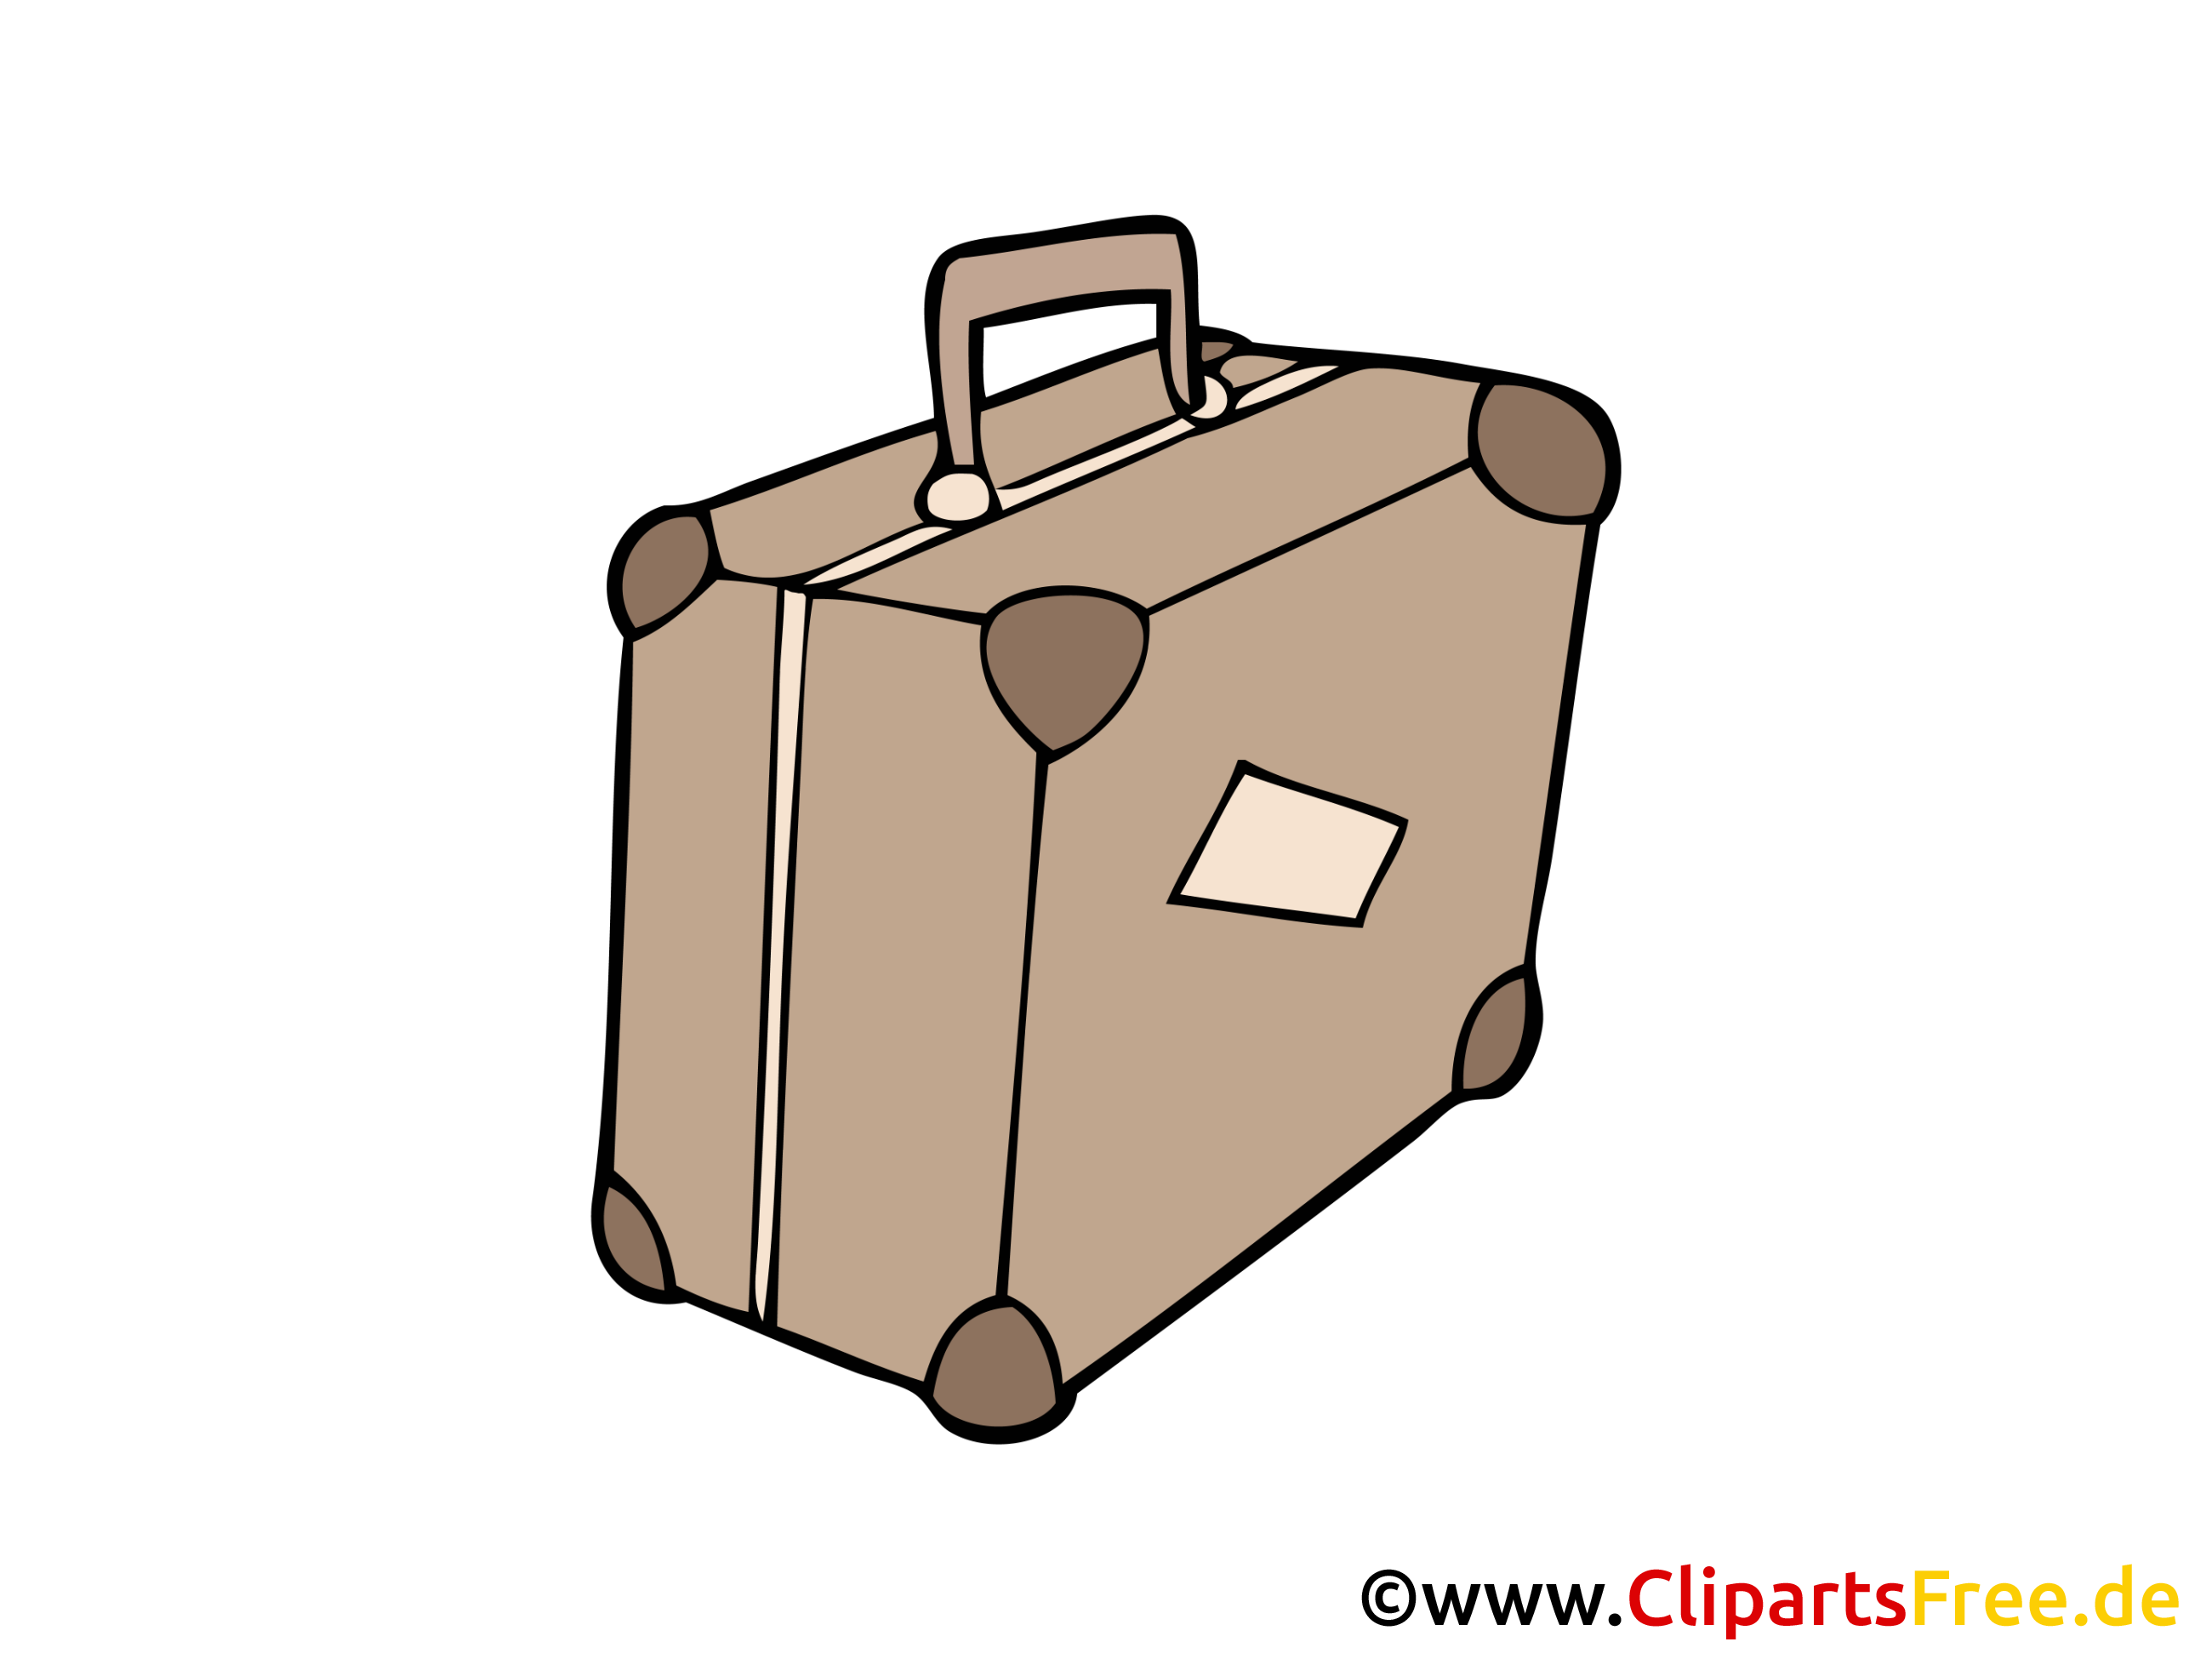 clipart gratuit valise - photo #2